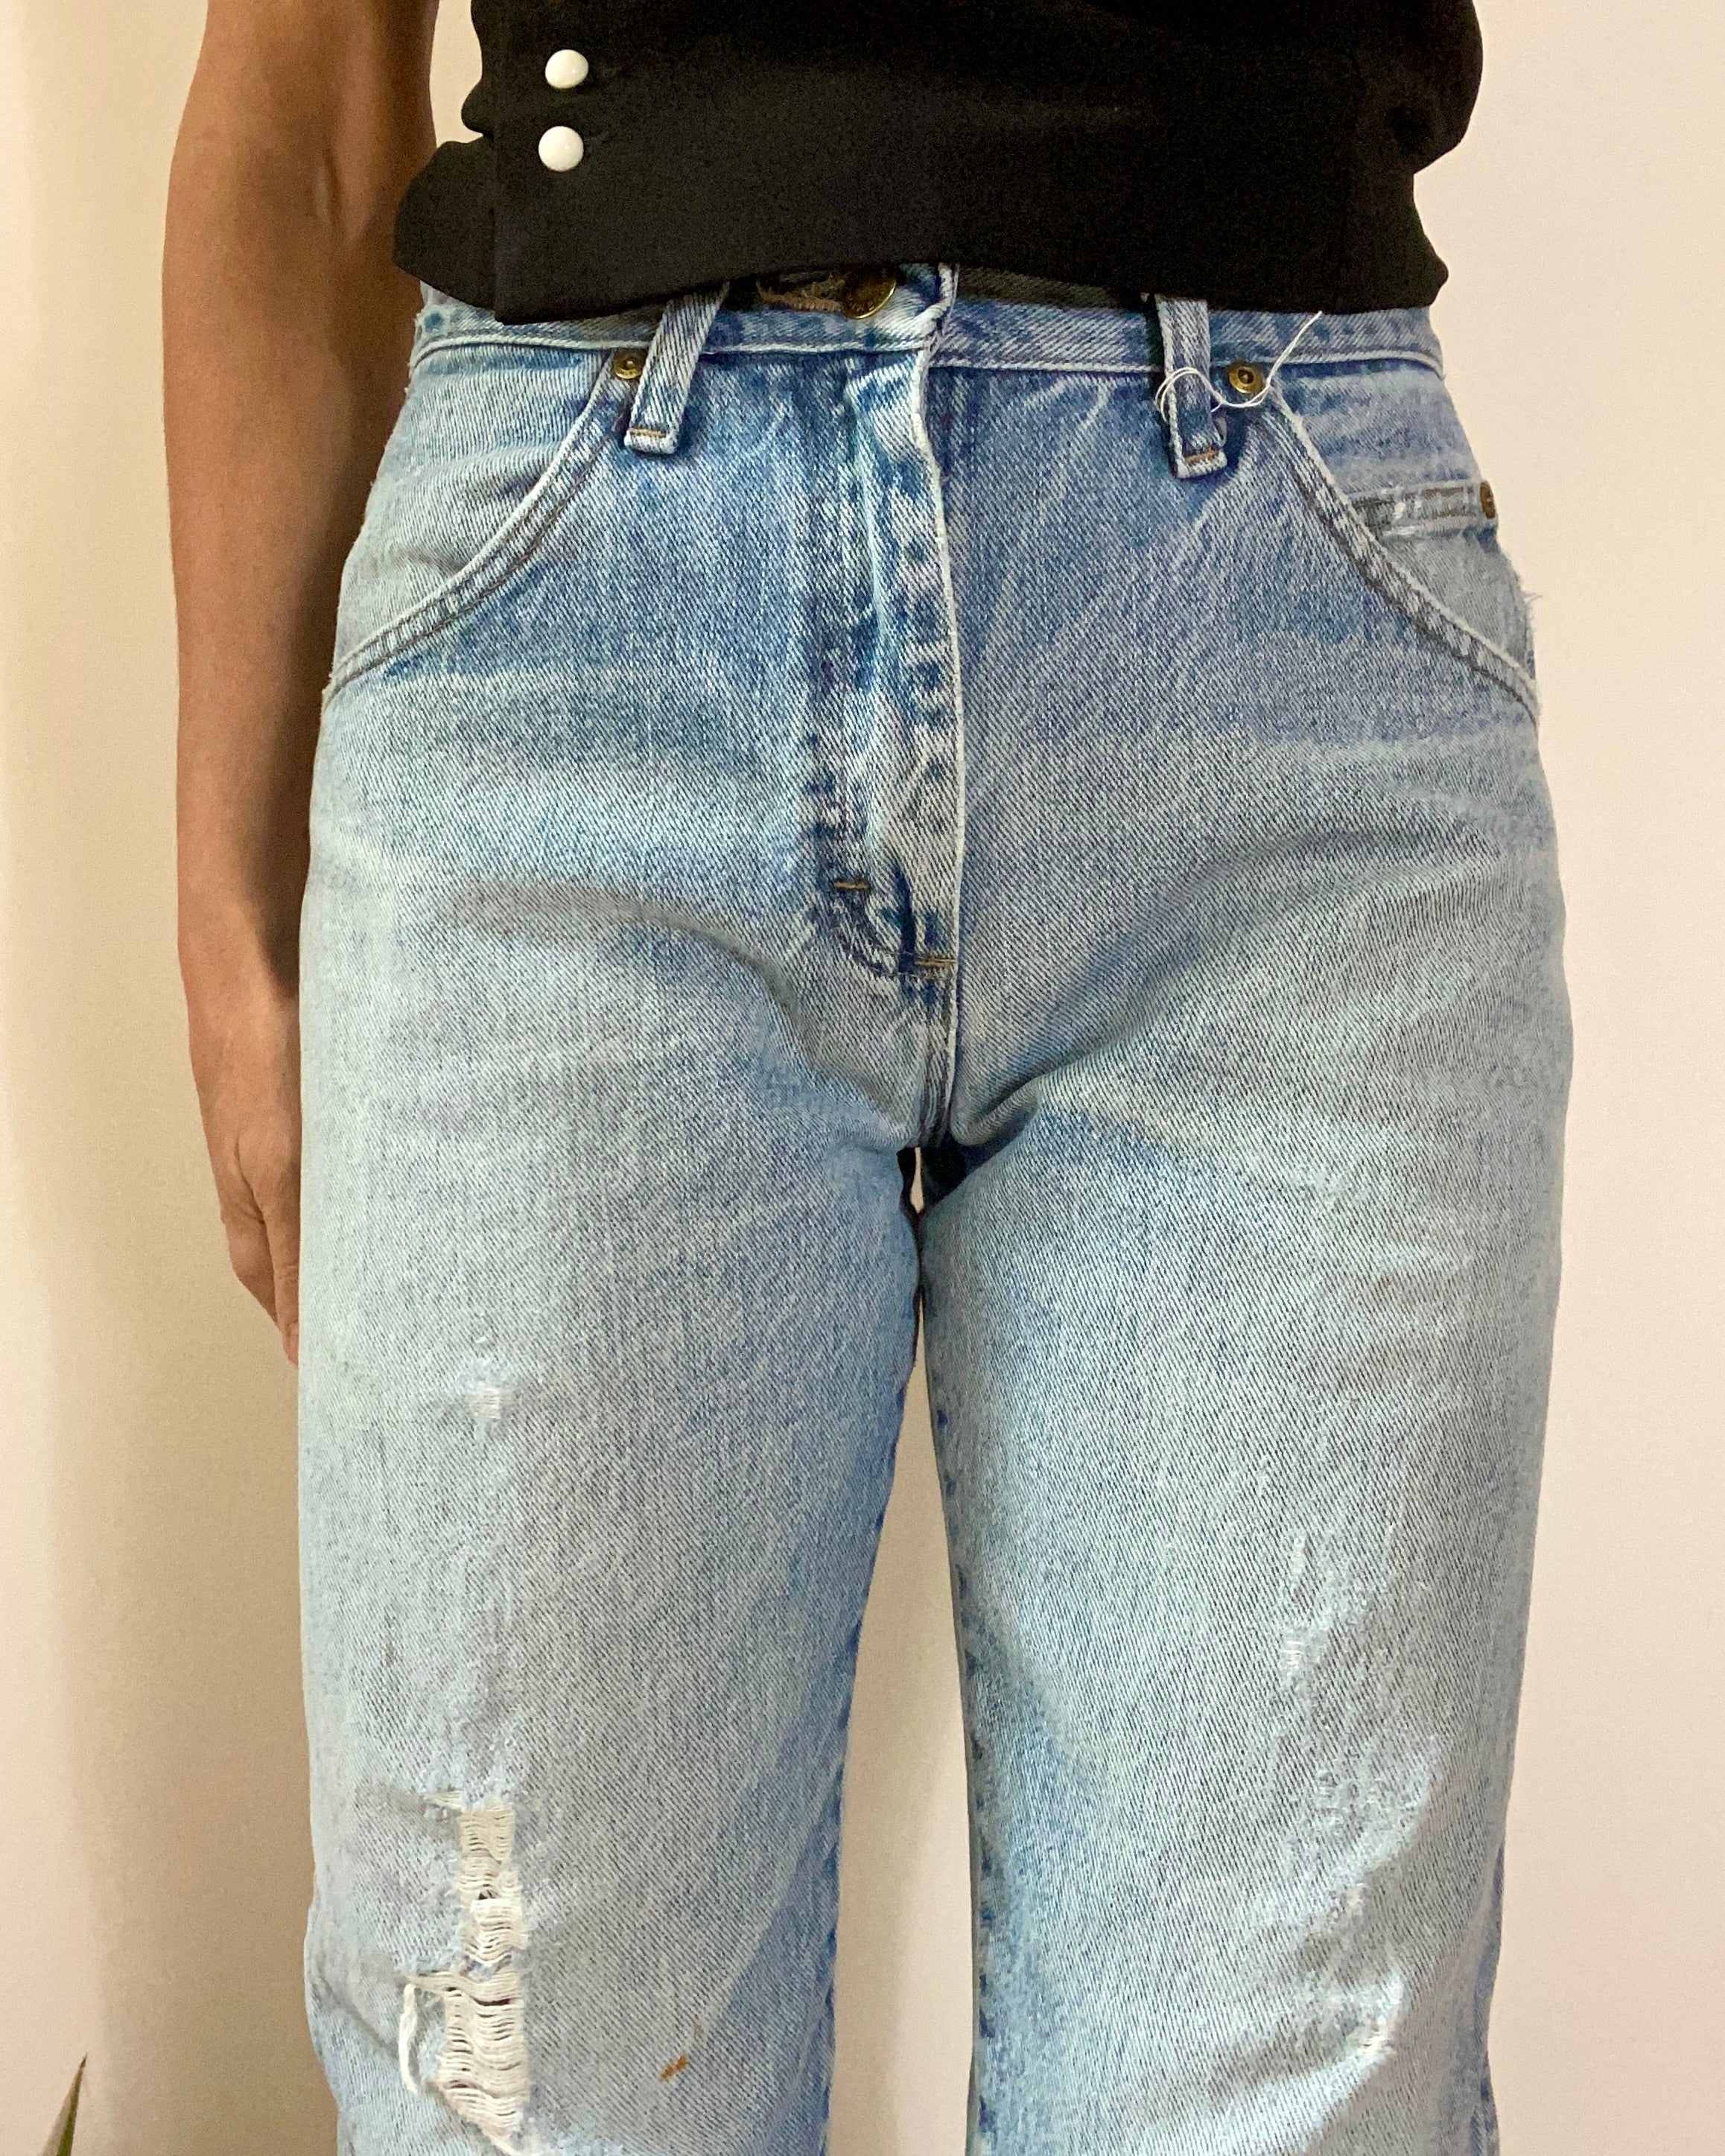 Vintage Wrangler Light Wash Jeans size 30